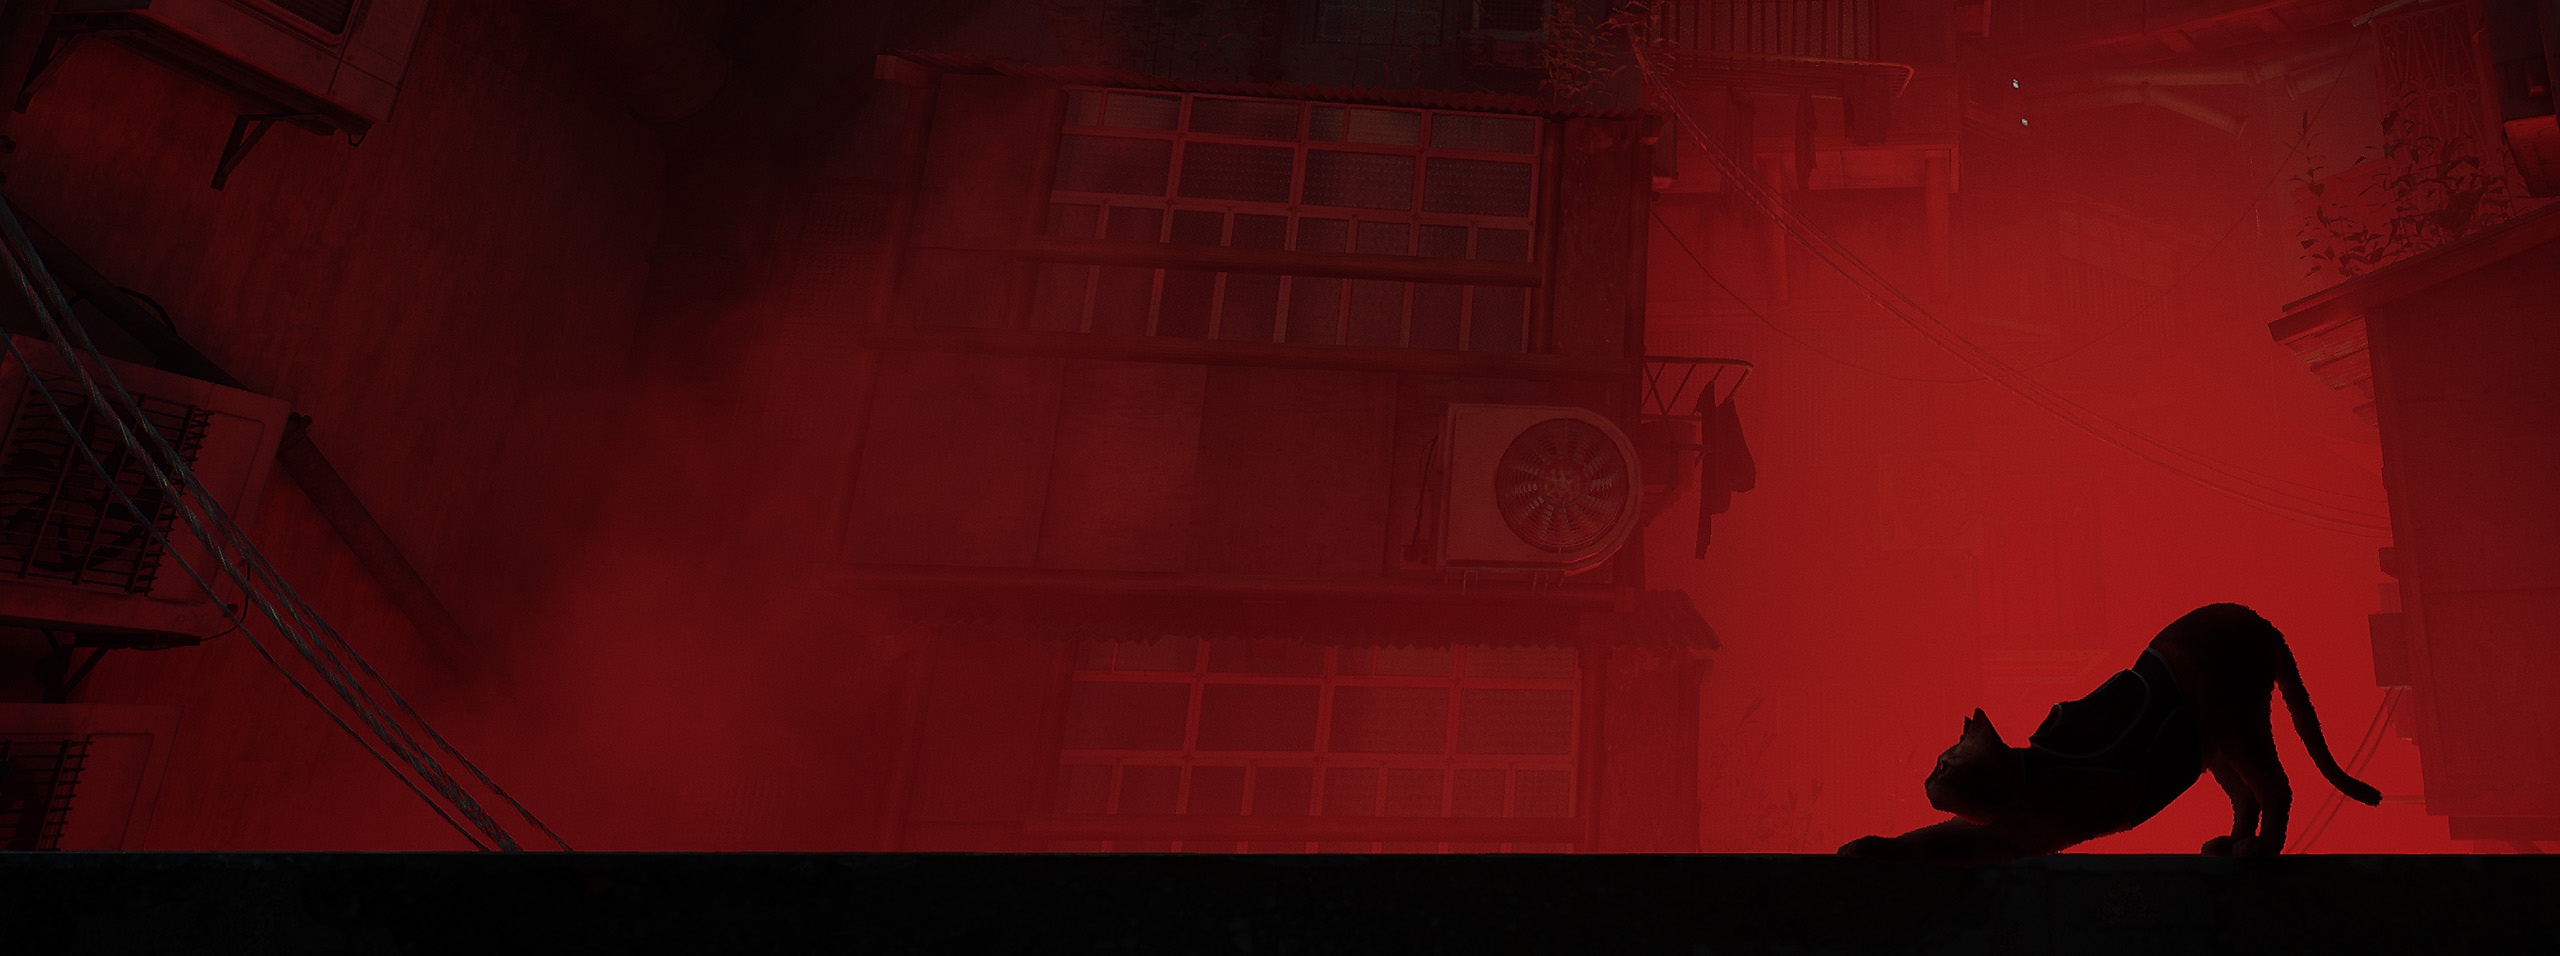 Alternativní verze klíčové grafiky pro Stray, zobrazující siluetu kočky z profilu na pozadí červené městské scenérie.